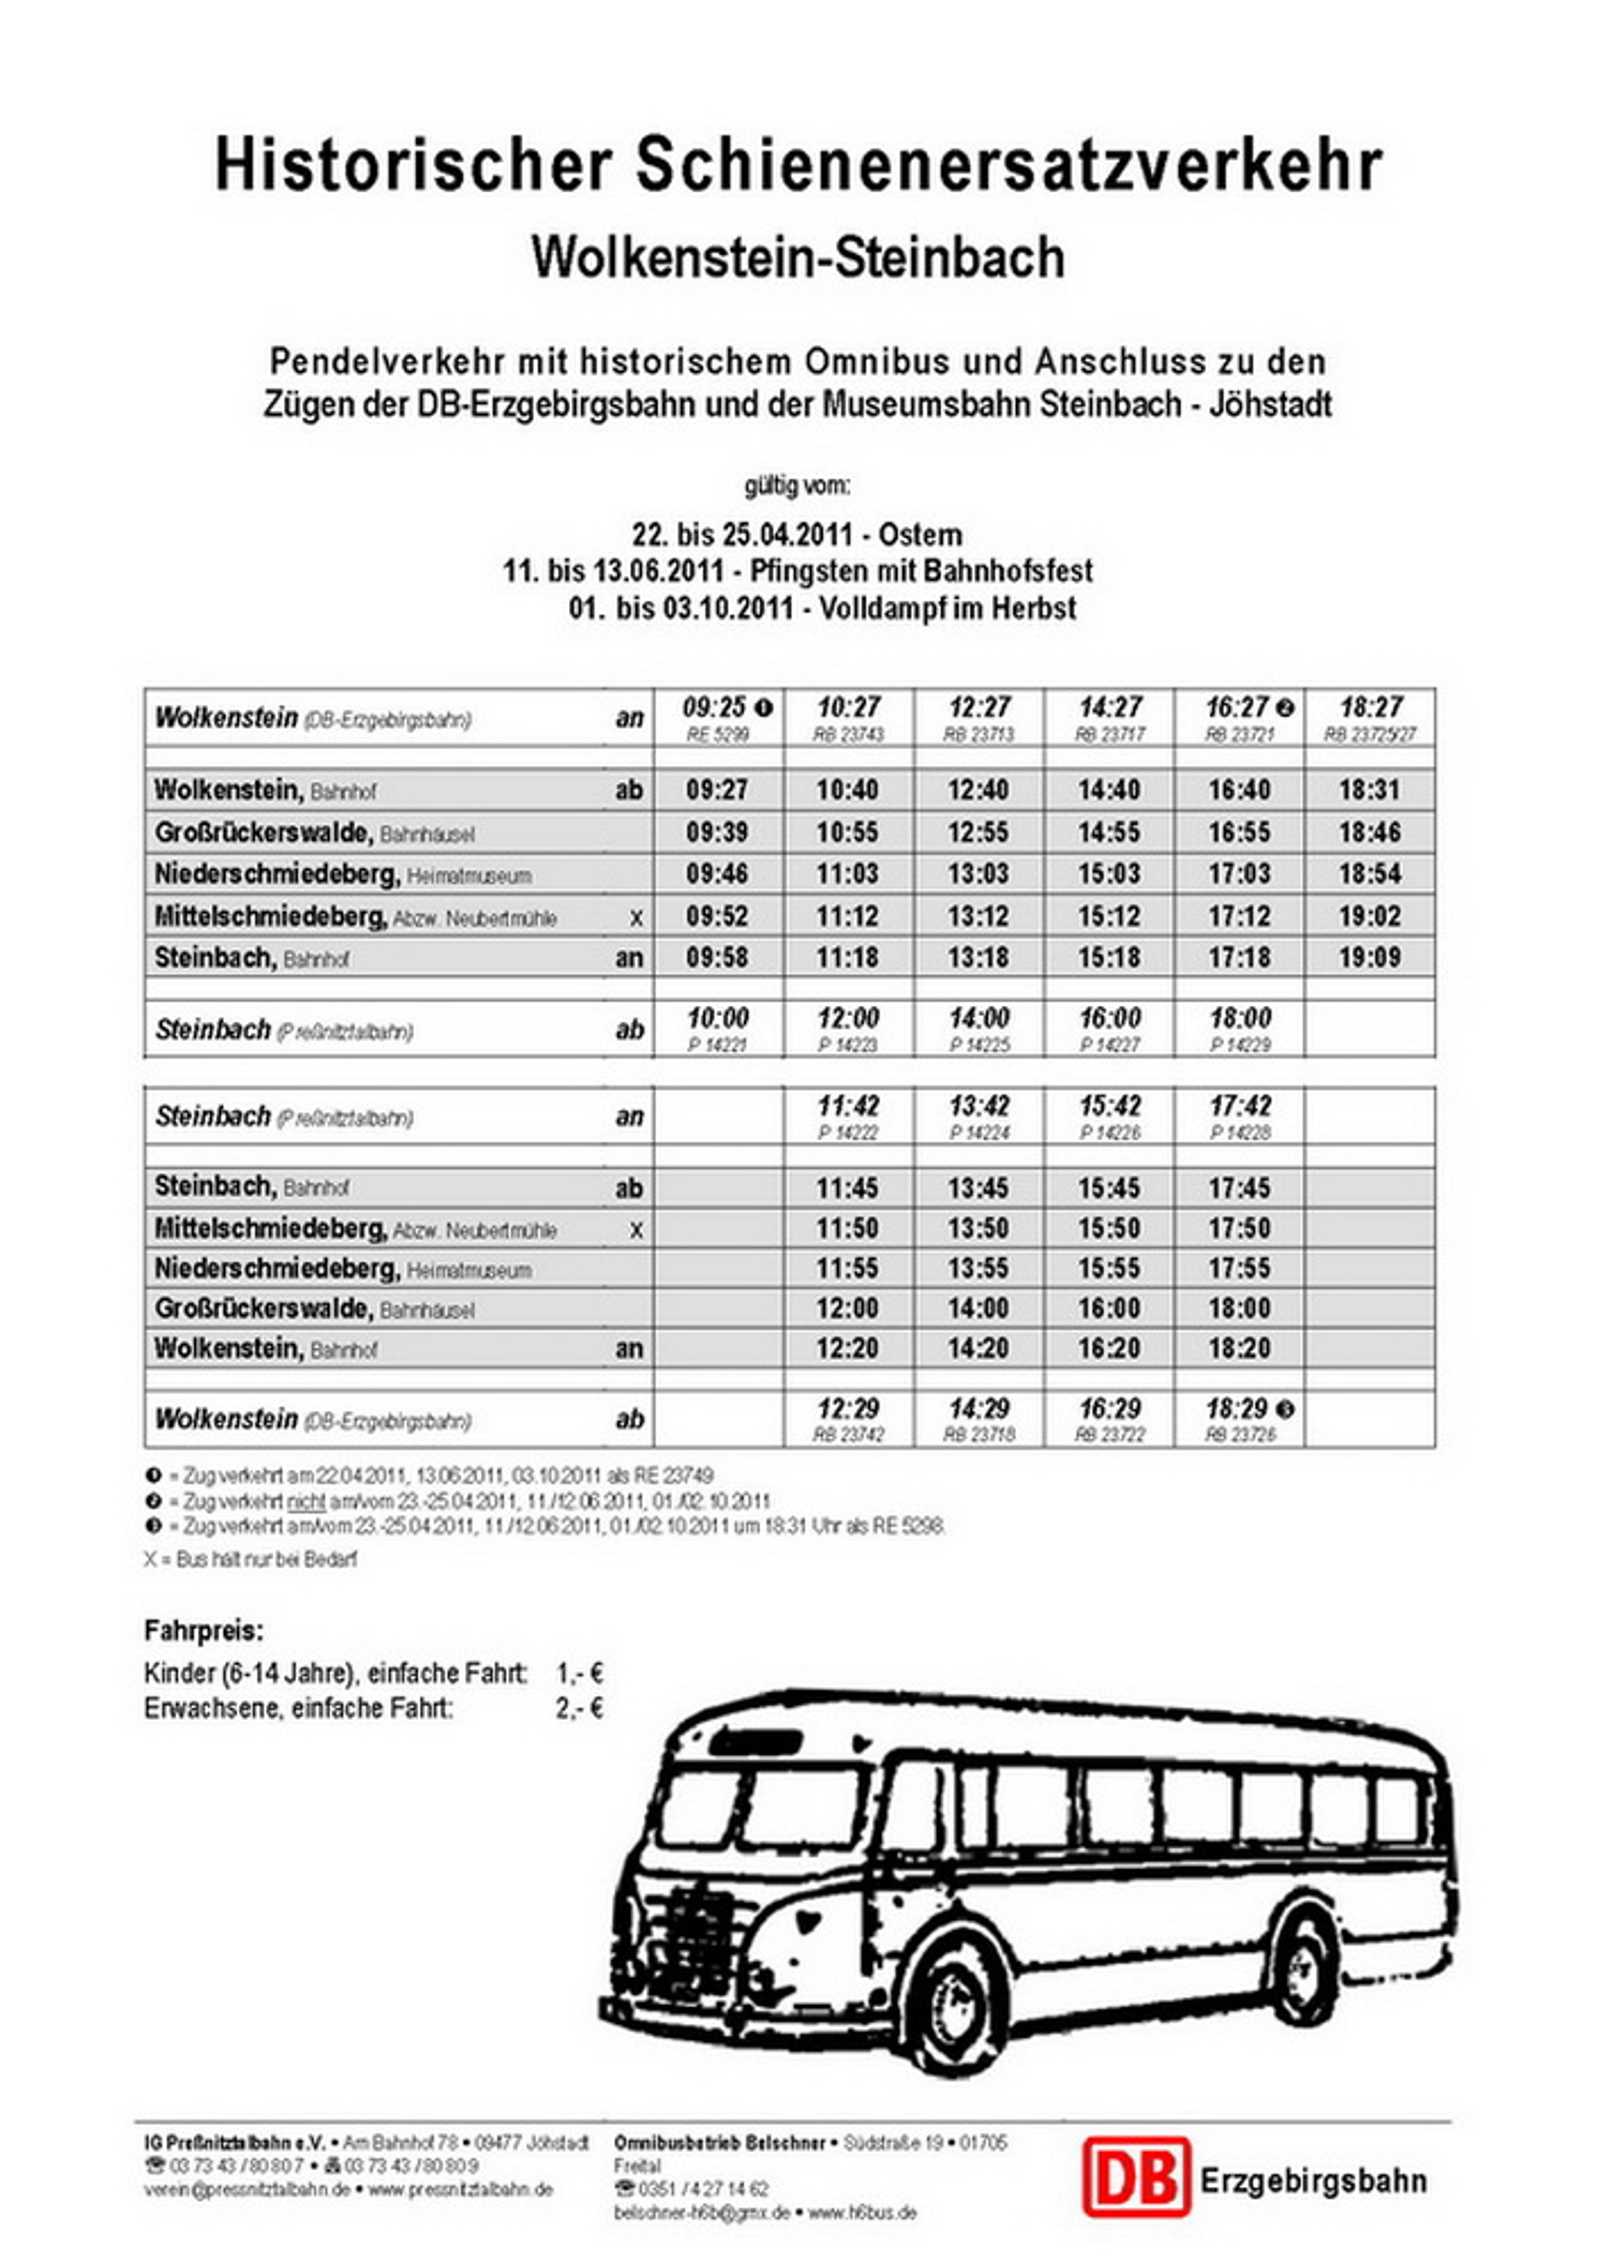 Fahrplan Historischer Schienenersatzverkehr Ostern und Pfingsten 2011